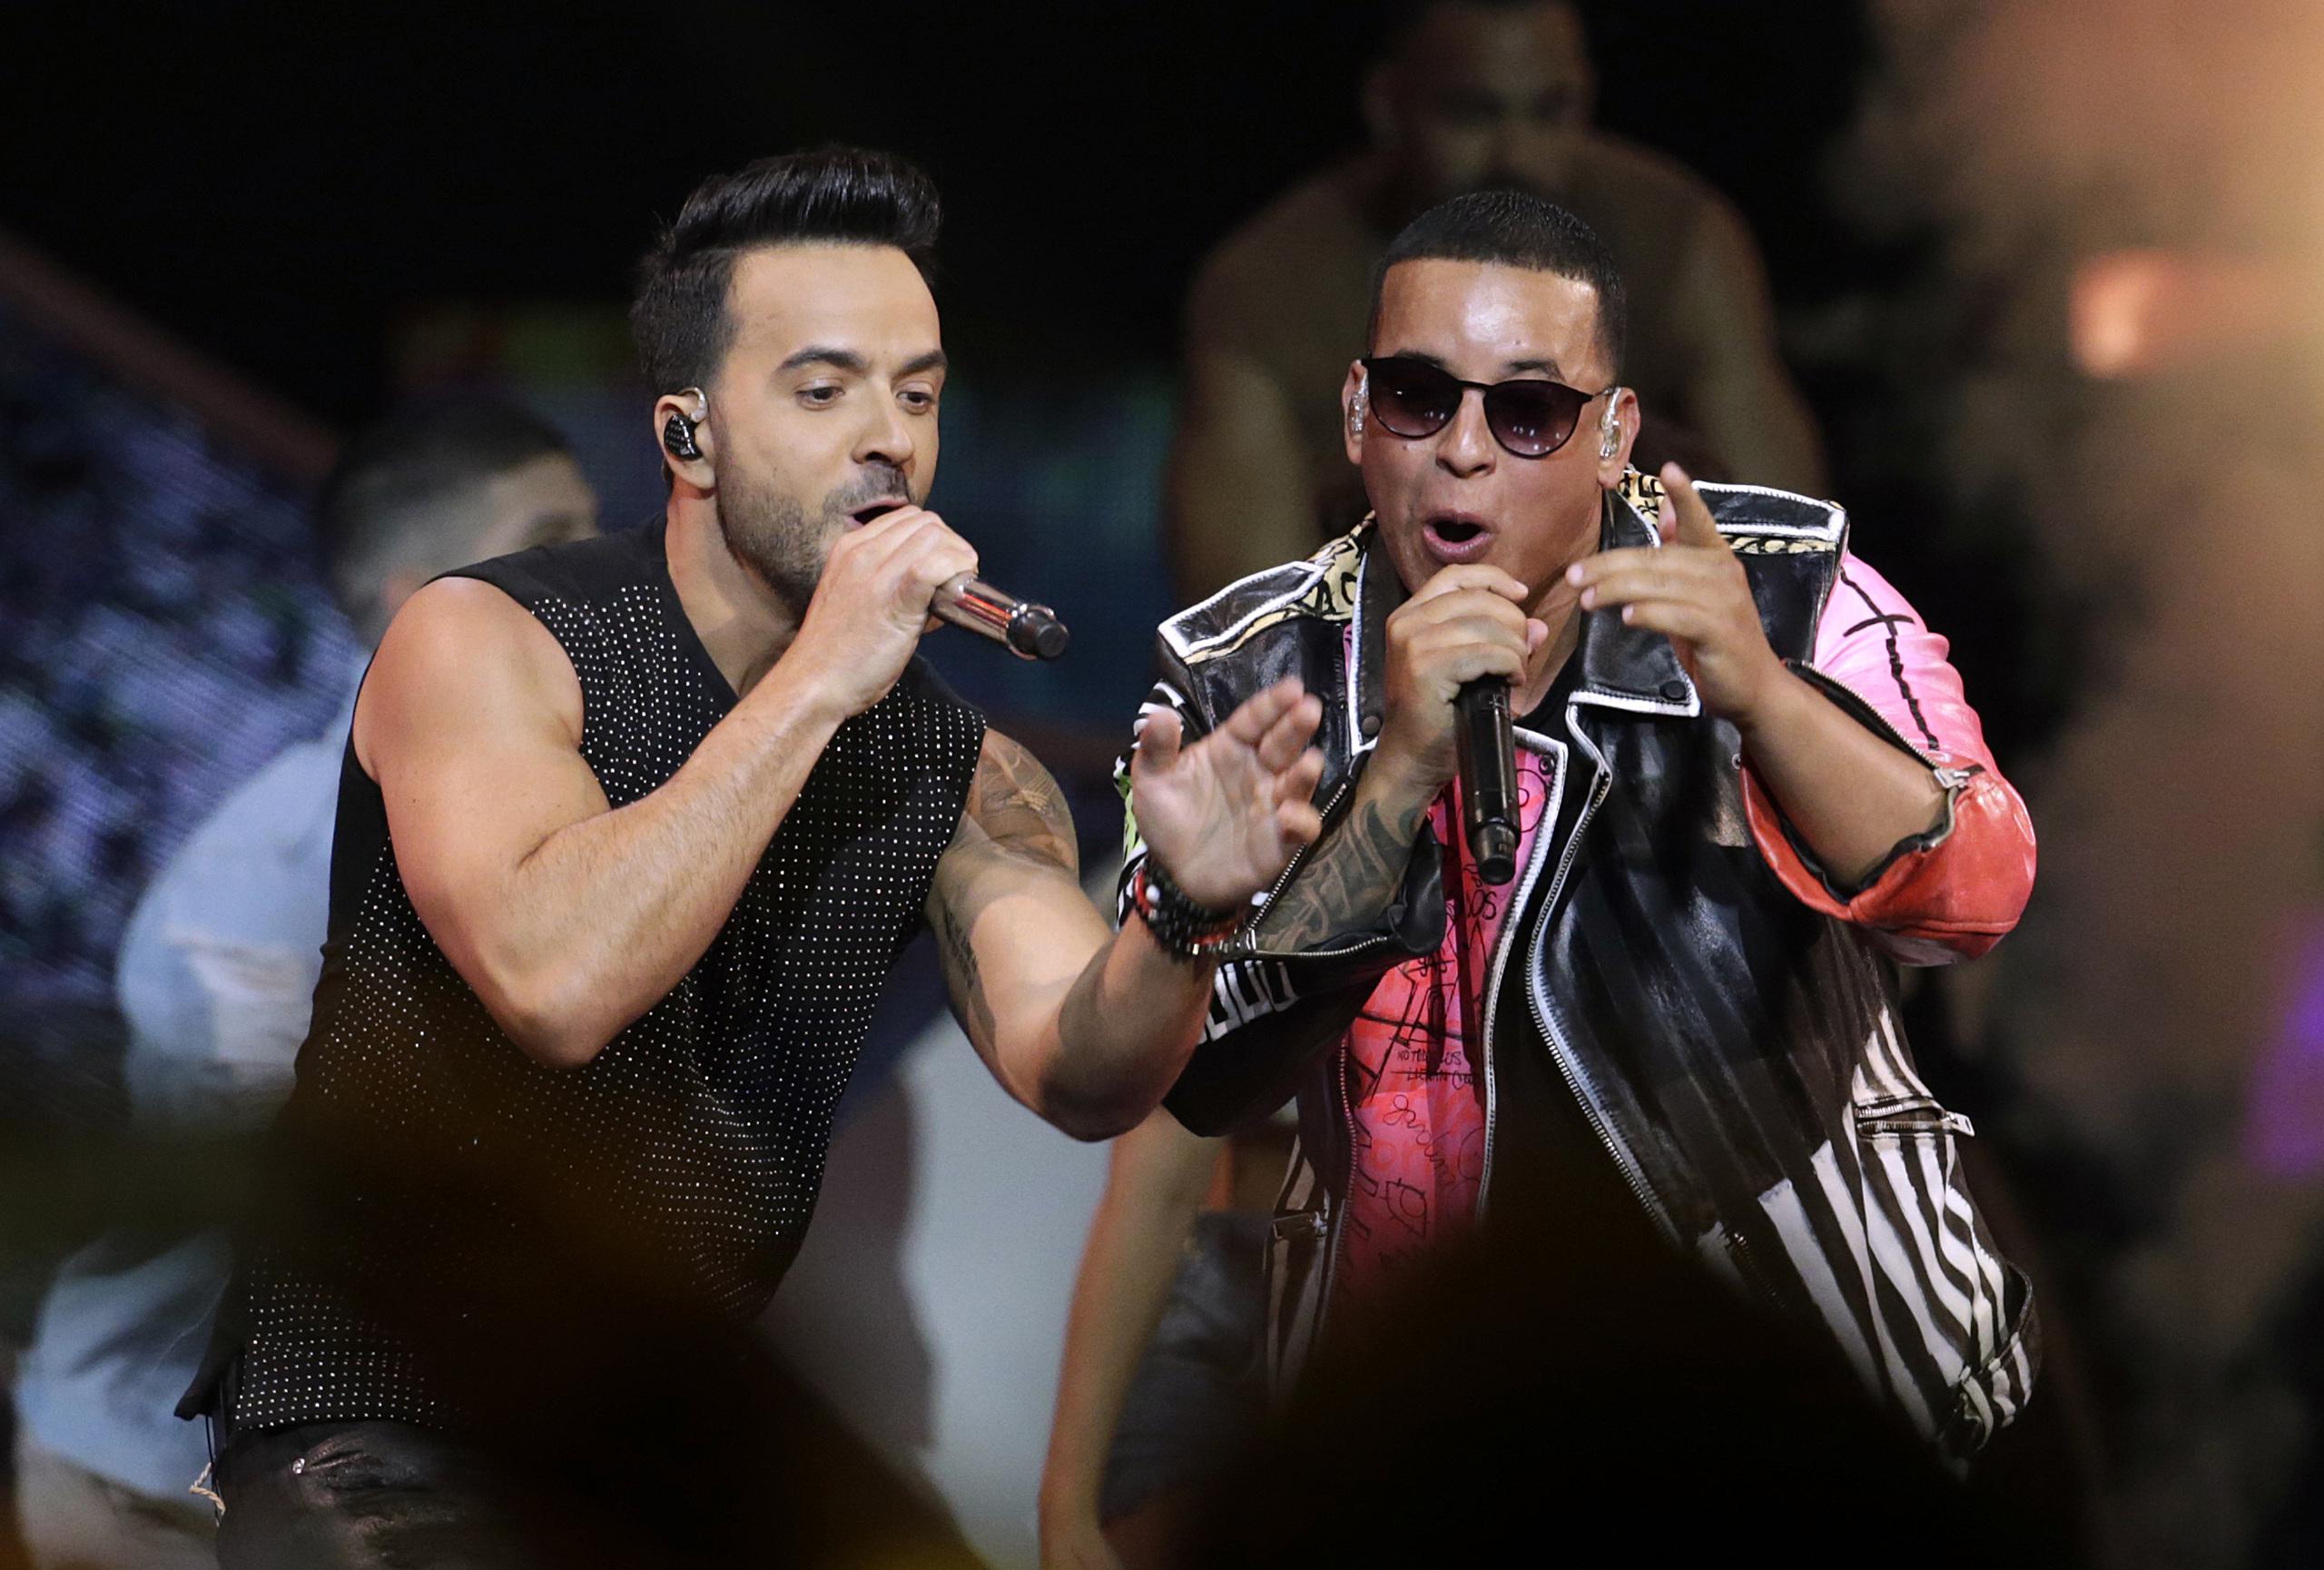 El éxito de “Despacito” estableció la marca de longevidad en la cima de “Hot Latin Songs” cuando pasó su 42 semana en el número 1 en la lista con fecha del 17 de febrero de 2018, superando el reinado de 41 semanas de “Bailando” de Enrique Iglesias en 2014-15.